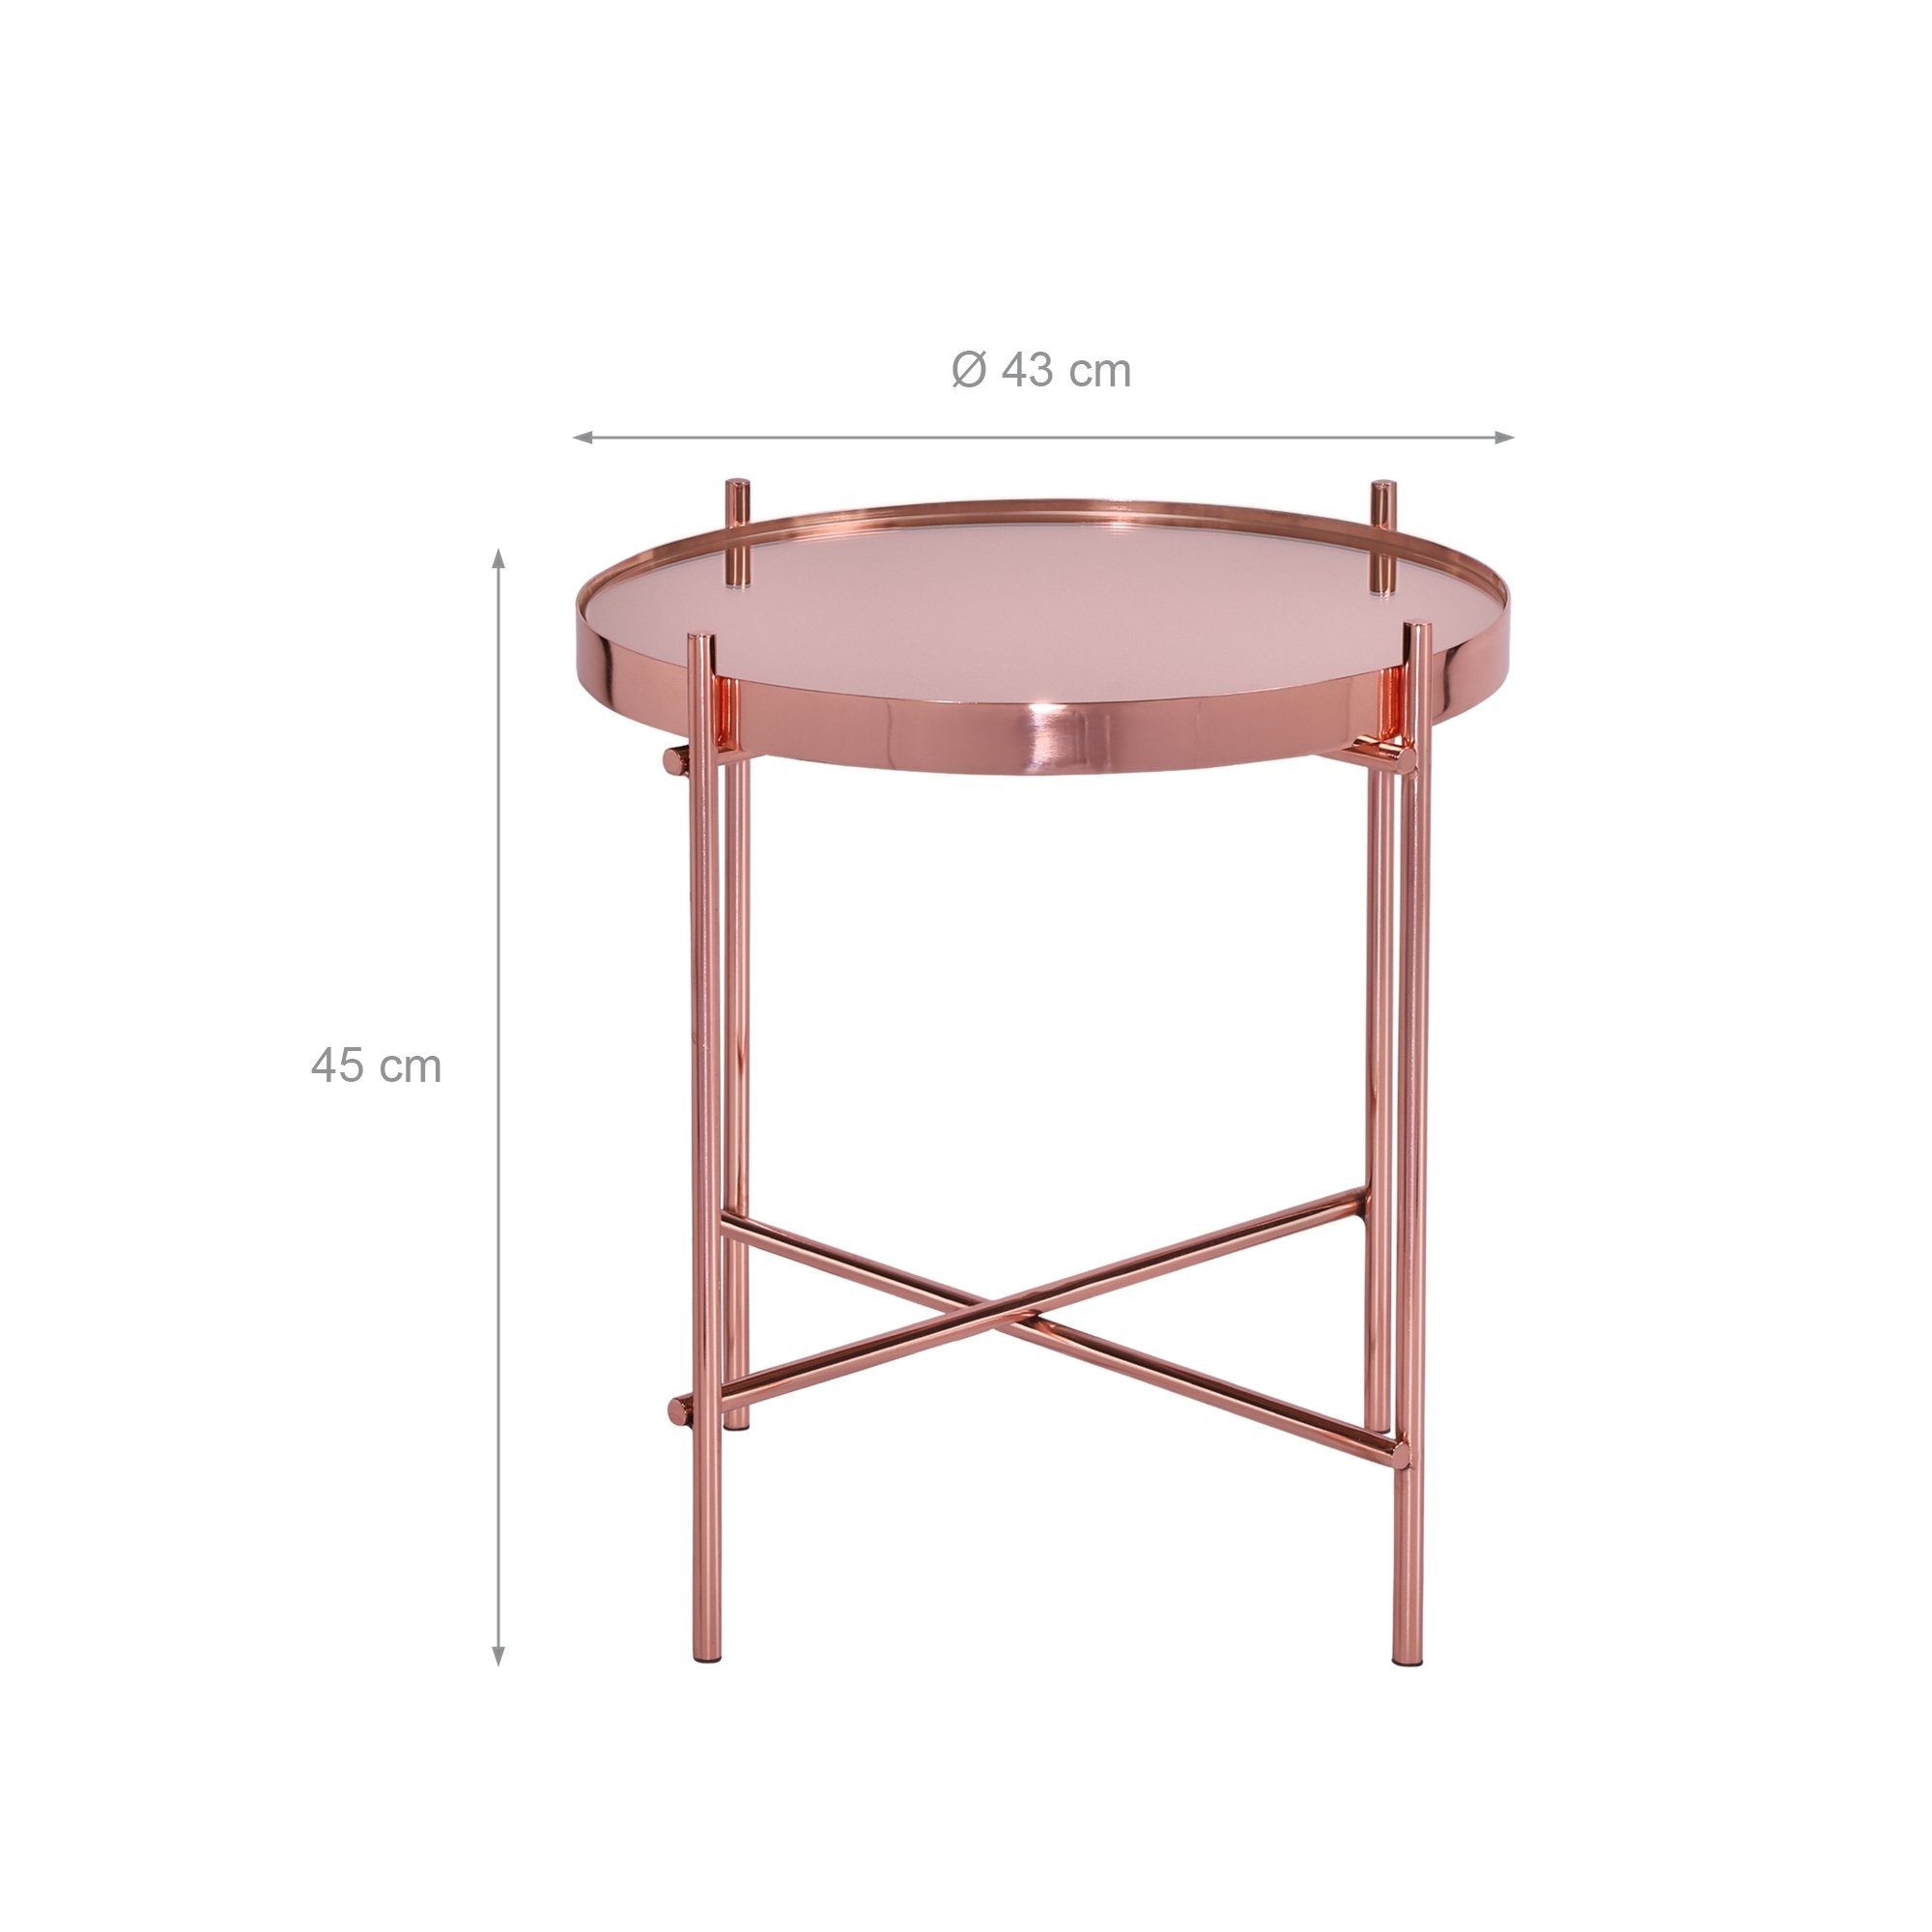 WOMO-DESIGN Beistelltisch Wohnzimmertisch Couchtisch Kupfer Lounge Unikat Rund Tisch, Sofatisch Glastisch Glas Metall Ø43x45cm Edler